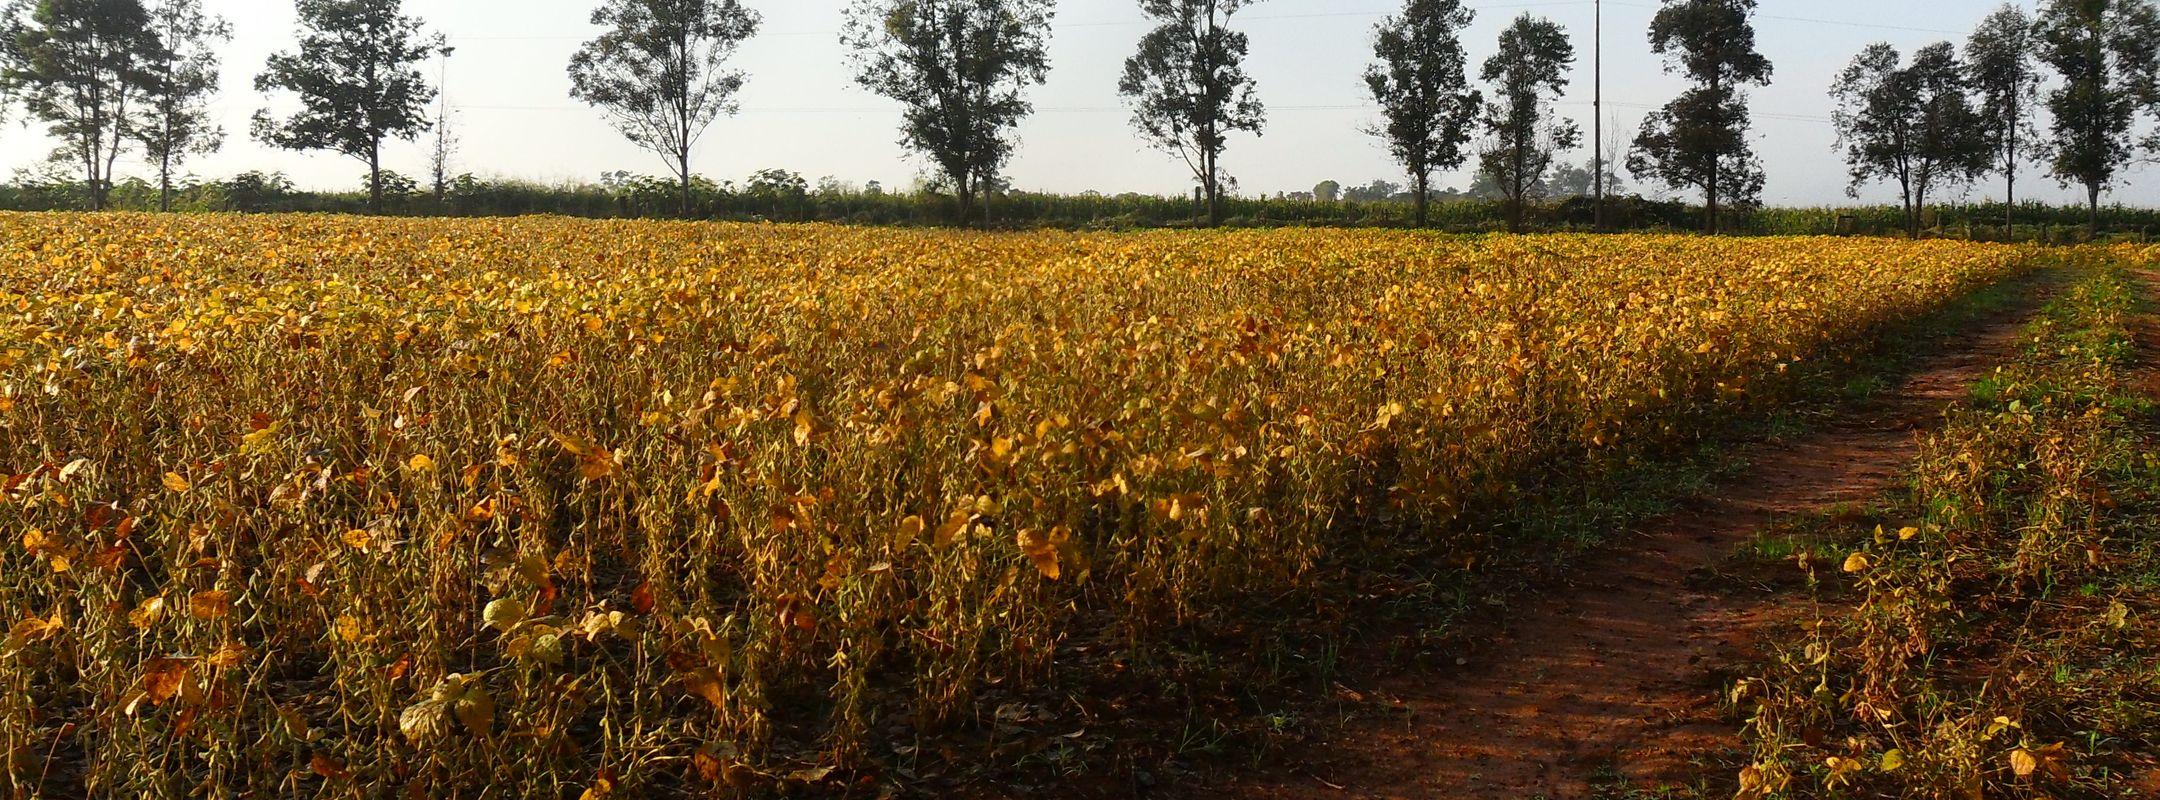 Soy field in Paraguay